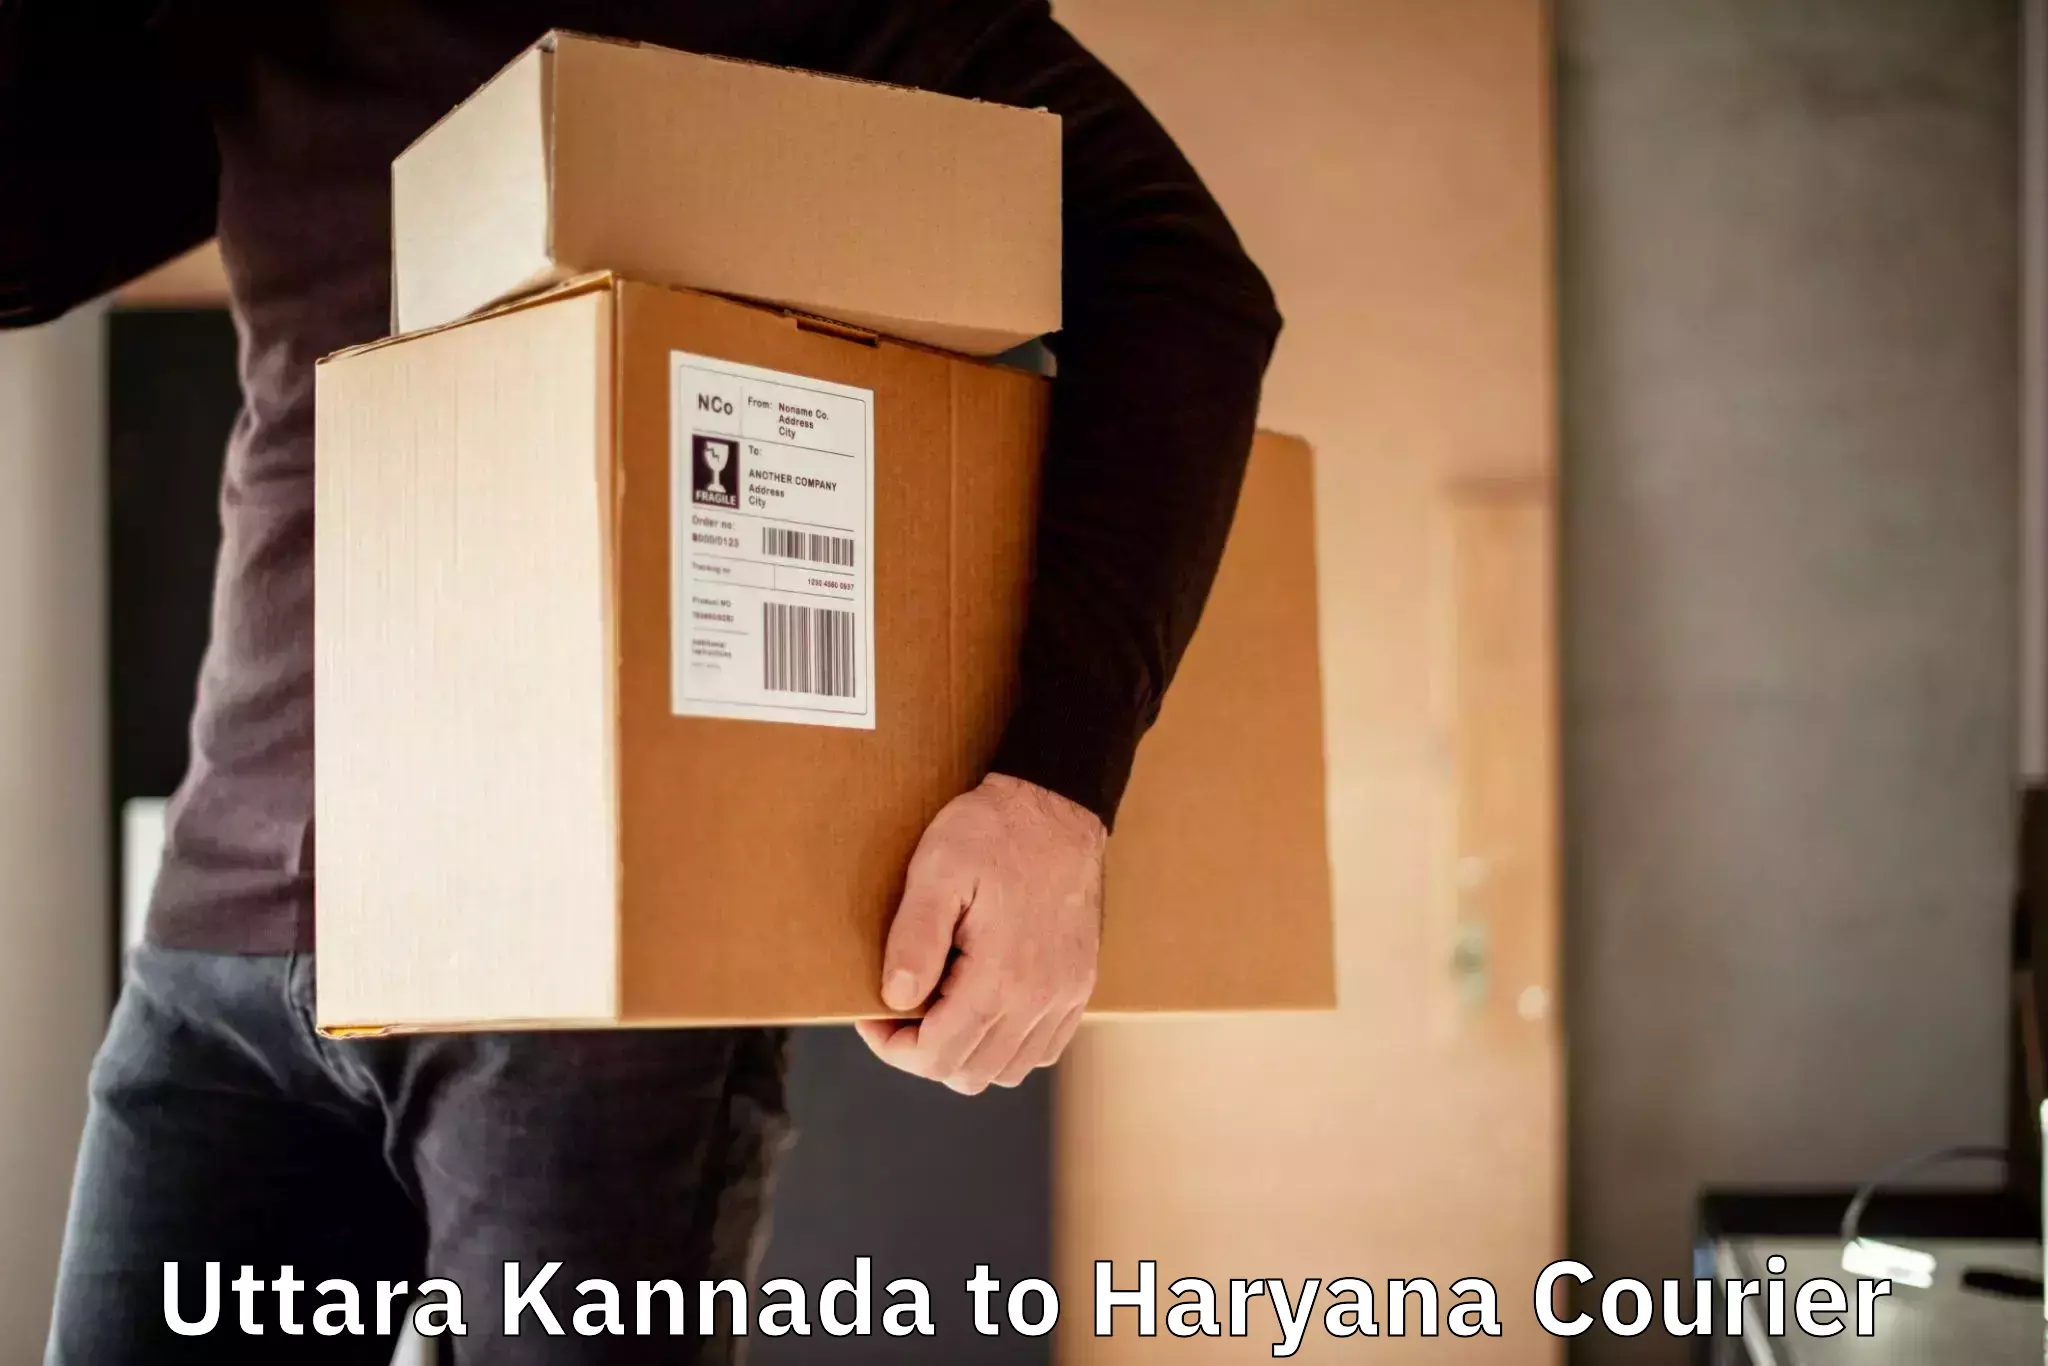 Premium courier services Uttara Kannada to Ellenabad